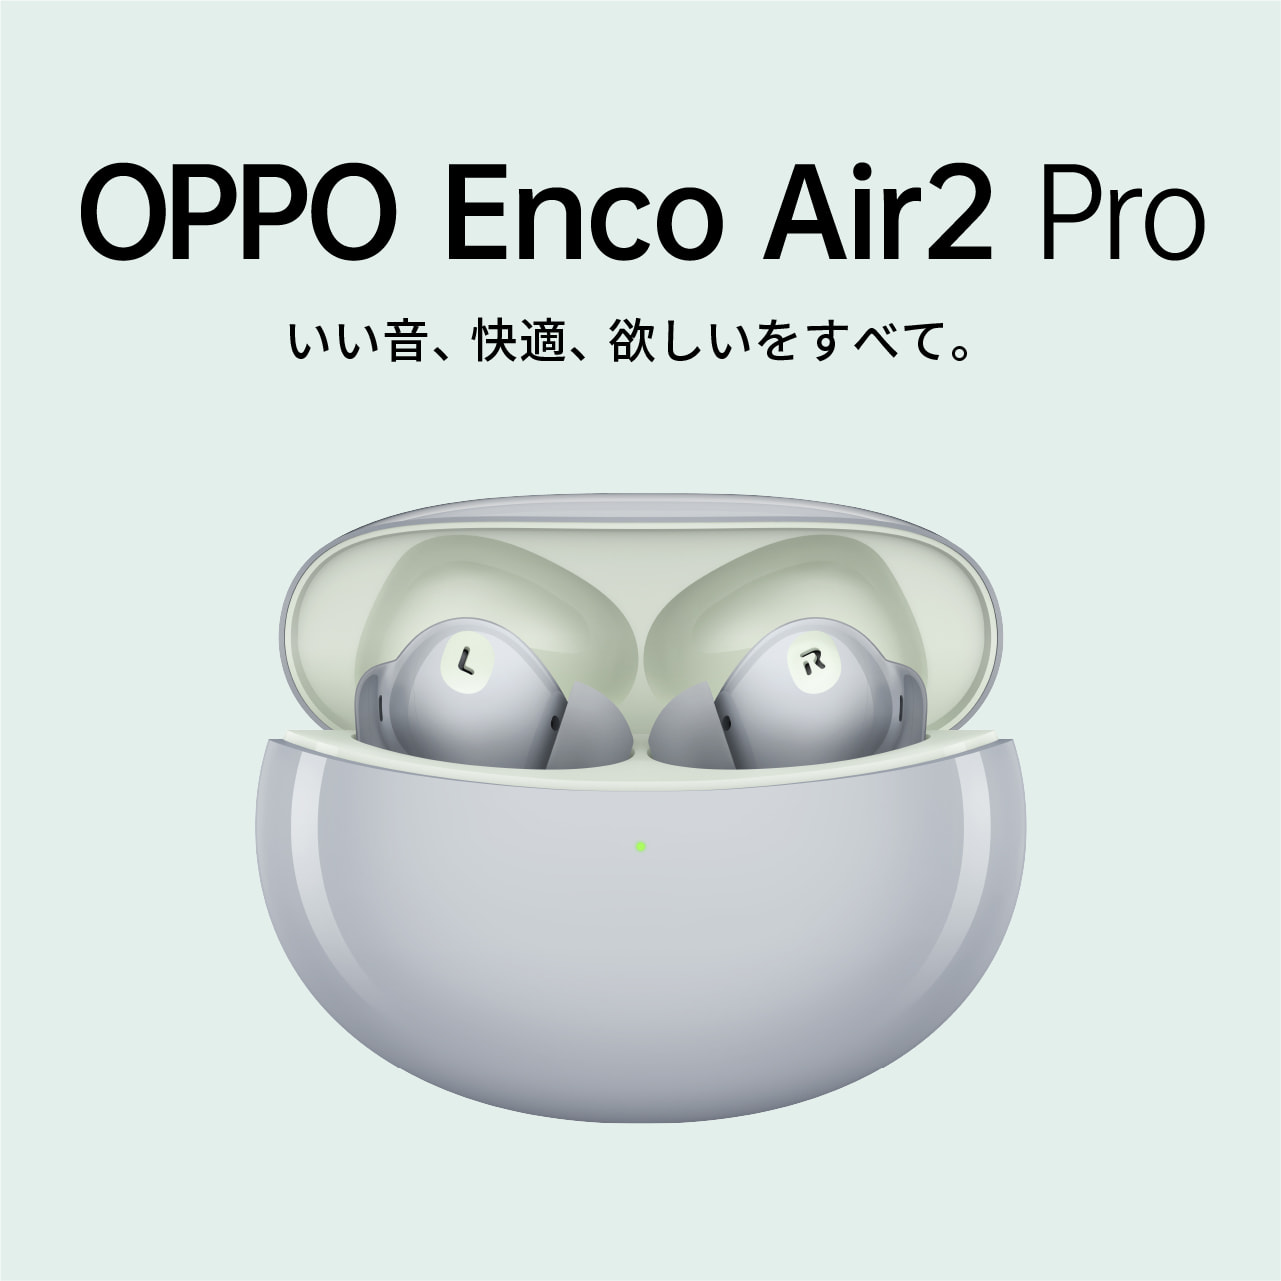 OPPO Enco Air2 Pro グレー ワイヤレスイヤホン 12.4mmの